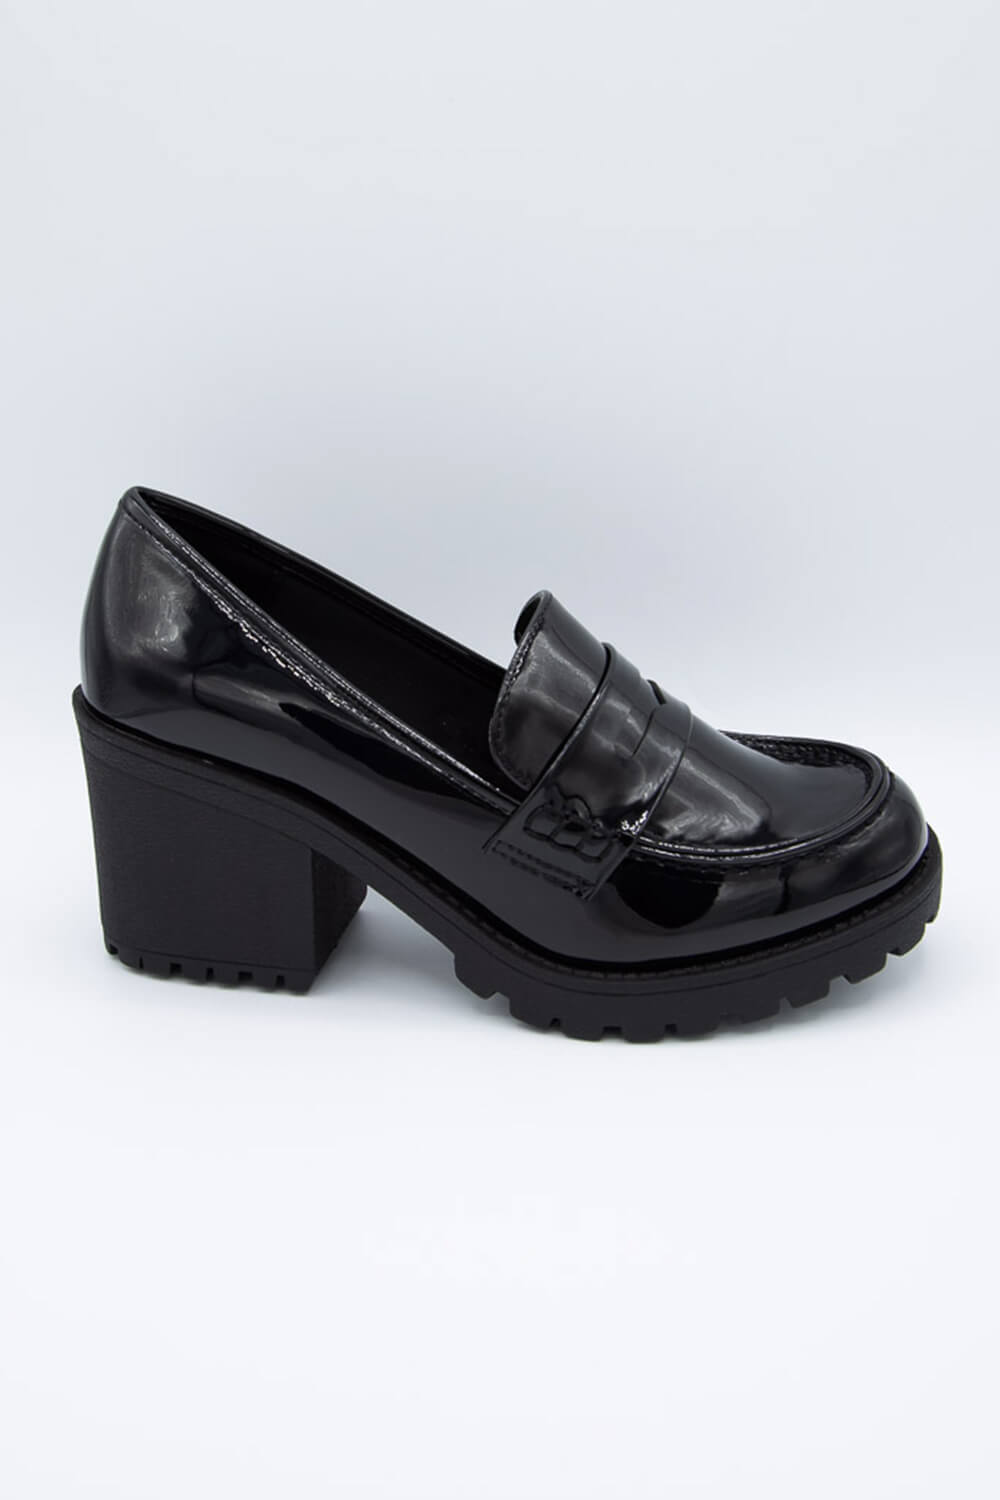 Soda Shoes Kinder Heel Loafer for Women in Black | KINDER-S BLACK – Glik's